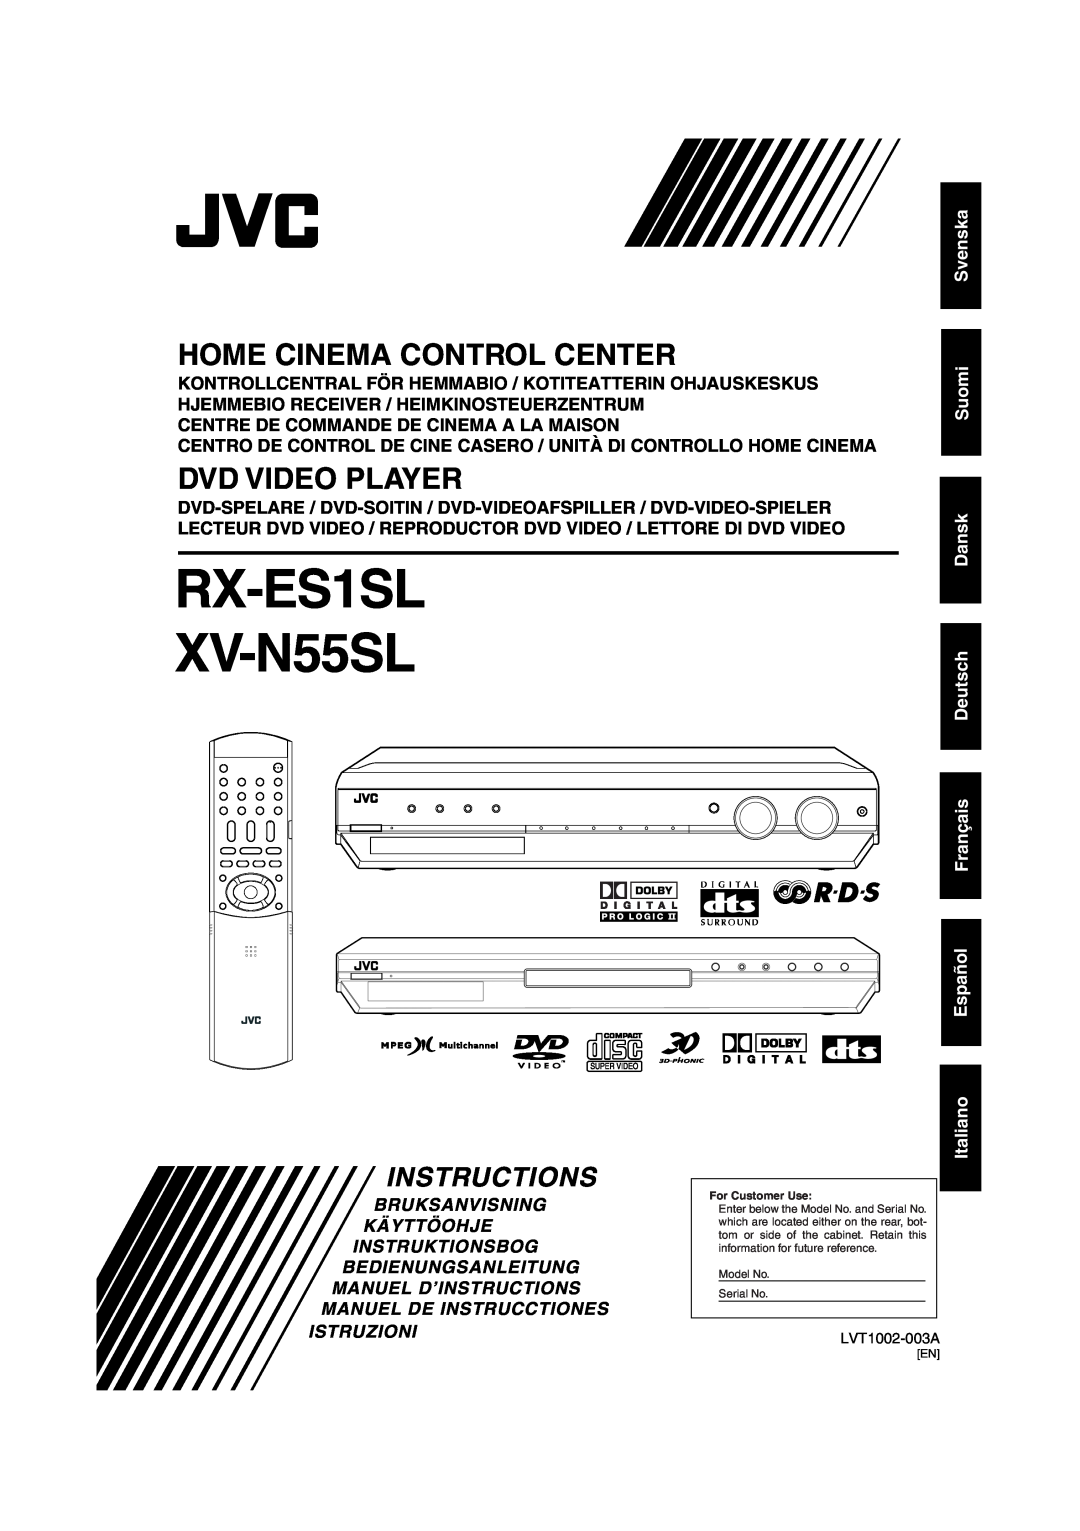 JVC RX-ES1SL manual Instructions, Svenska Suomi, Dansk Deutsch Français Español Italiano, Bruksanvisning Käyttöohje 